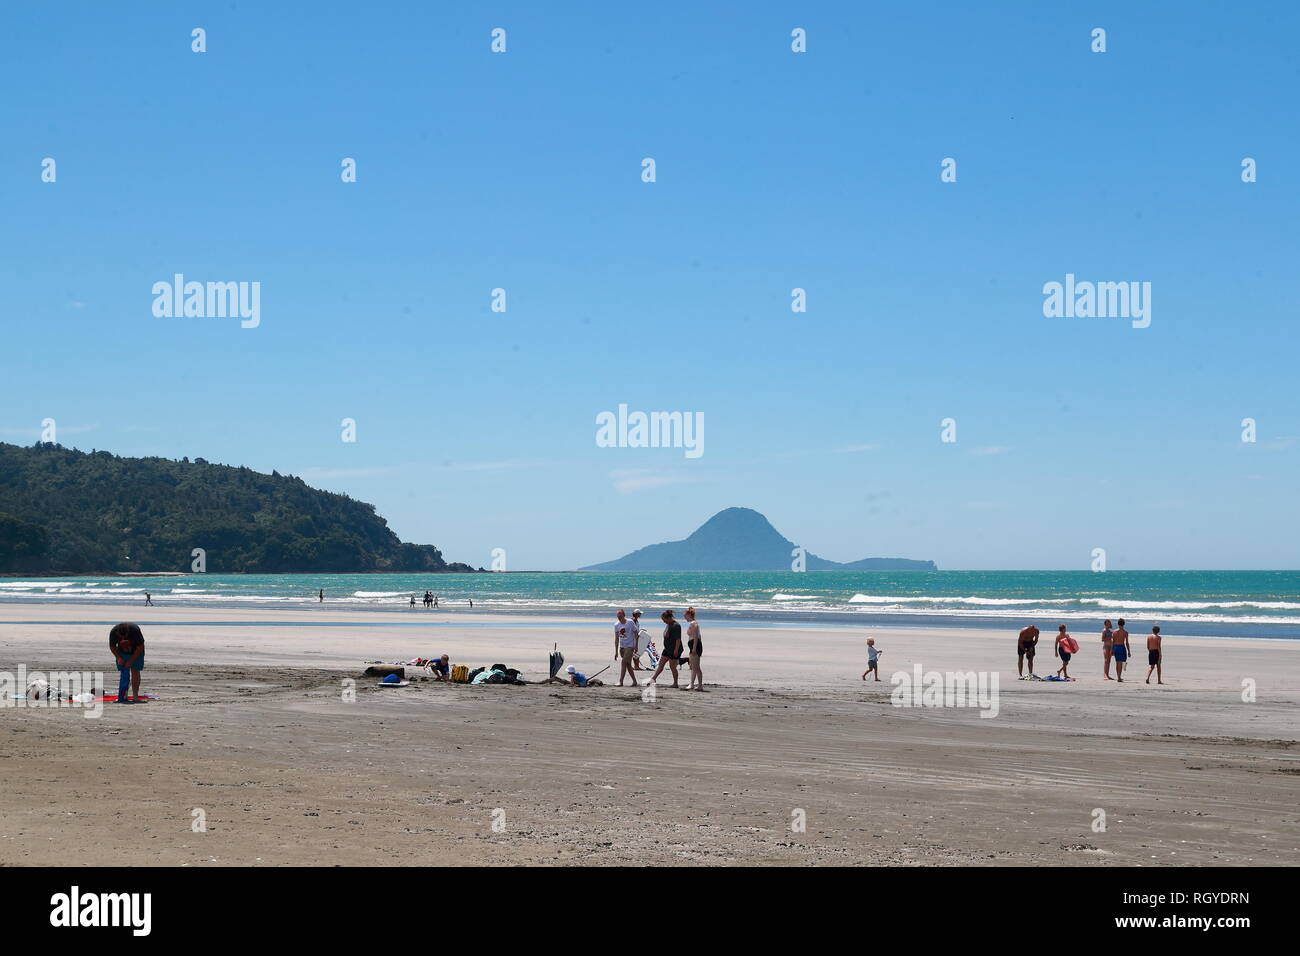 Los fanáticos de los deportes de agua los nadadores y disfrutar de la playa en Whakatane, Nueva Zelanda Foto de stock